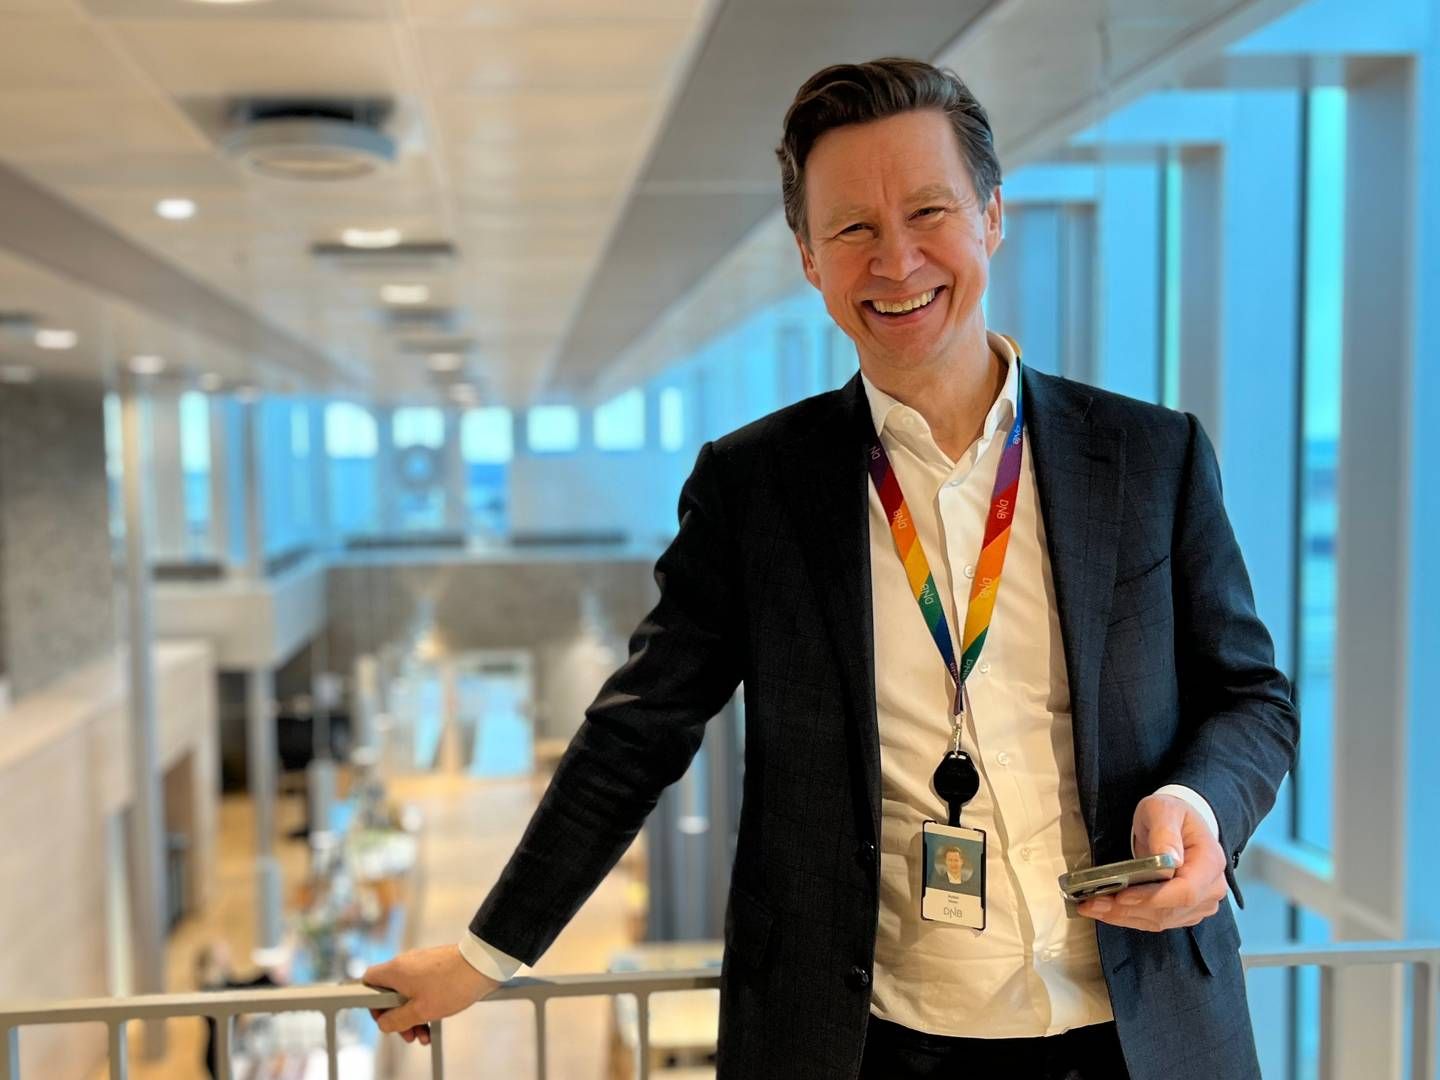 VIL GJØRE MER: Juridisk direktør i DNB sier banken må gjøre mer enn å kun stille krav til advokatfirmaene. | Photo: Stian Olsen / AdvokatWatch